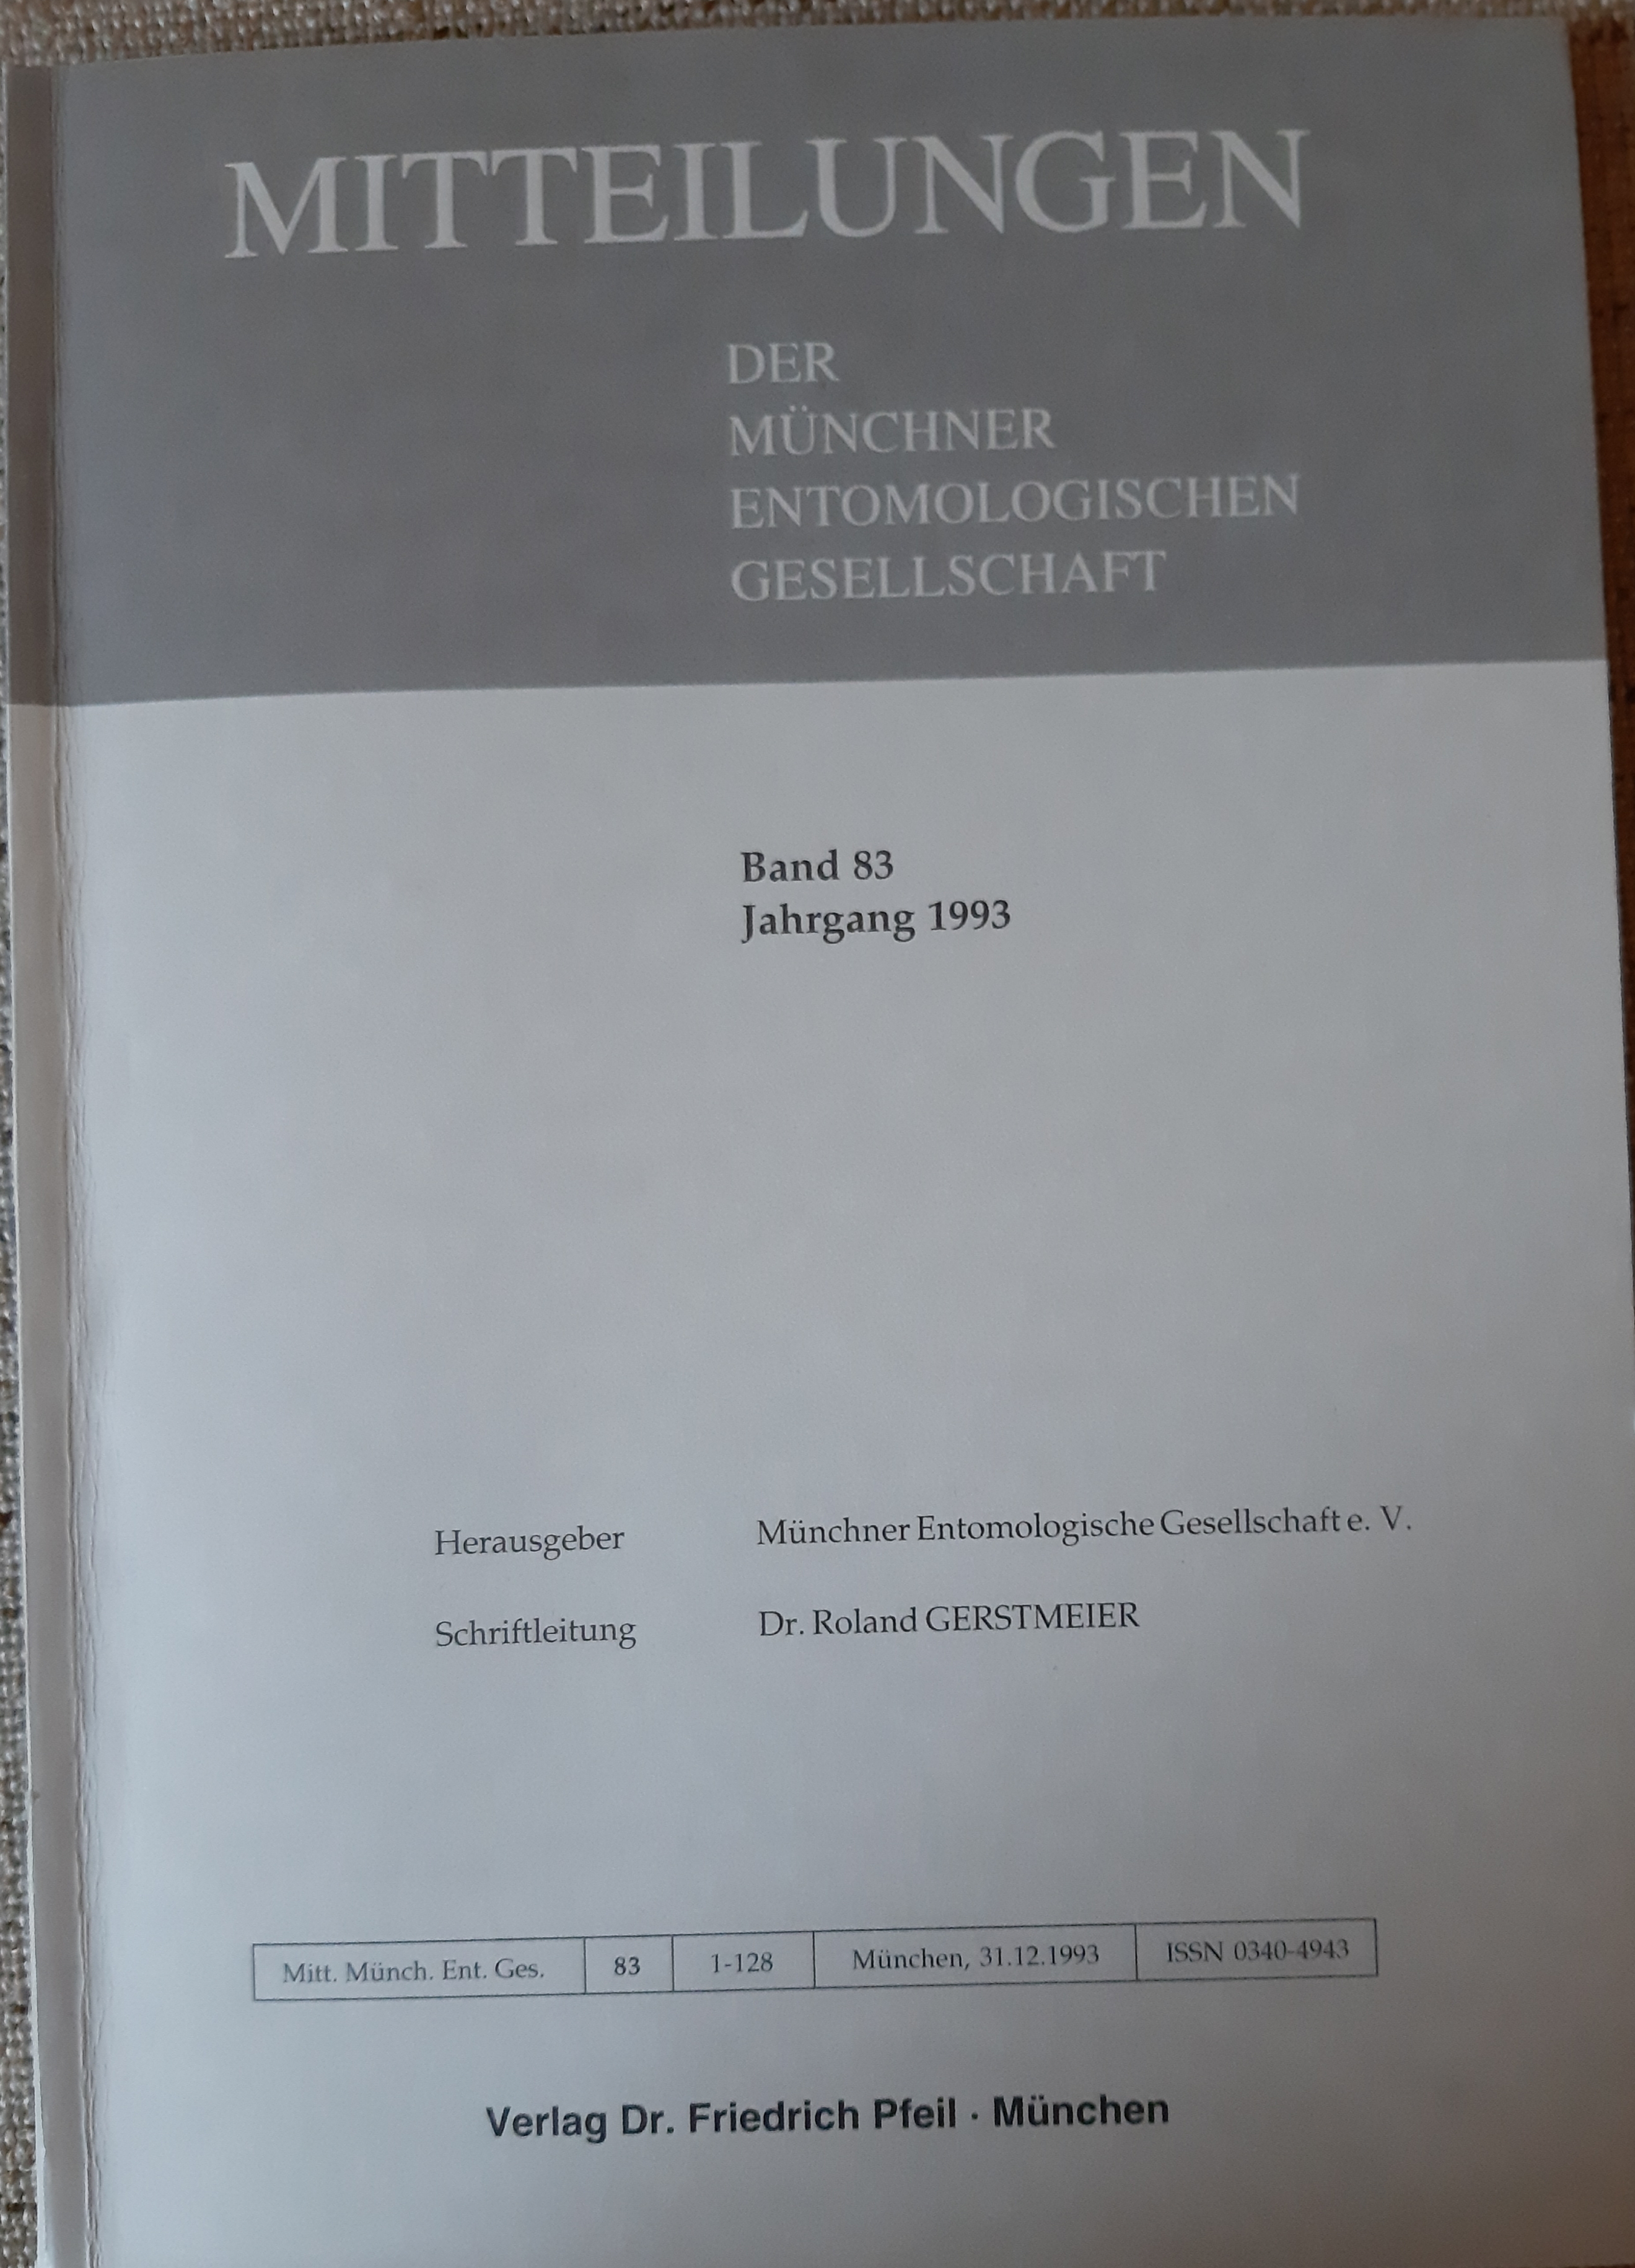 Mitteilungen der Münchner Entomologischen Gesellschaft 1993/83. kötet (Rippl-Rónai Múzeum RR-F)